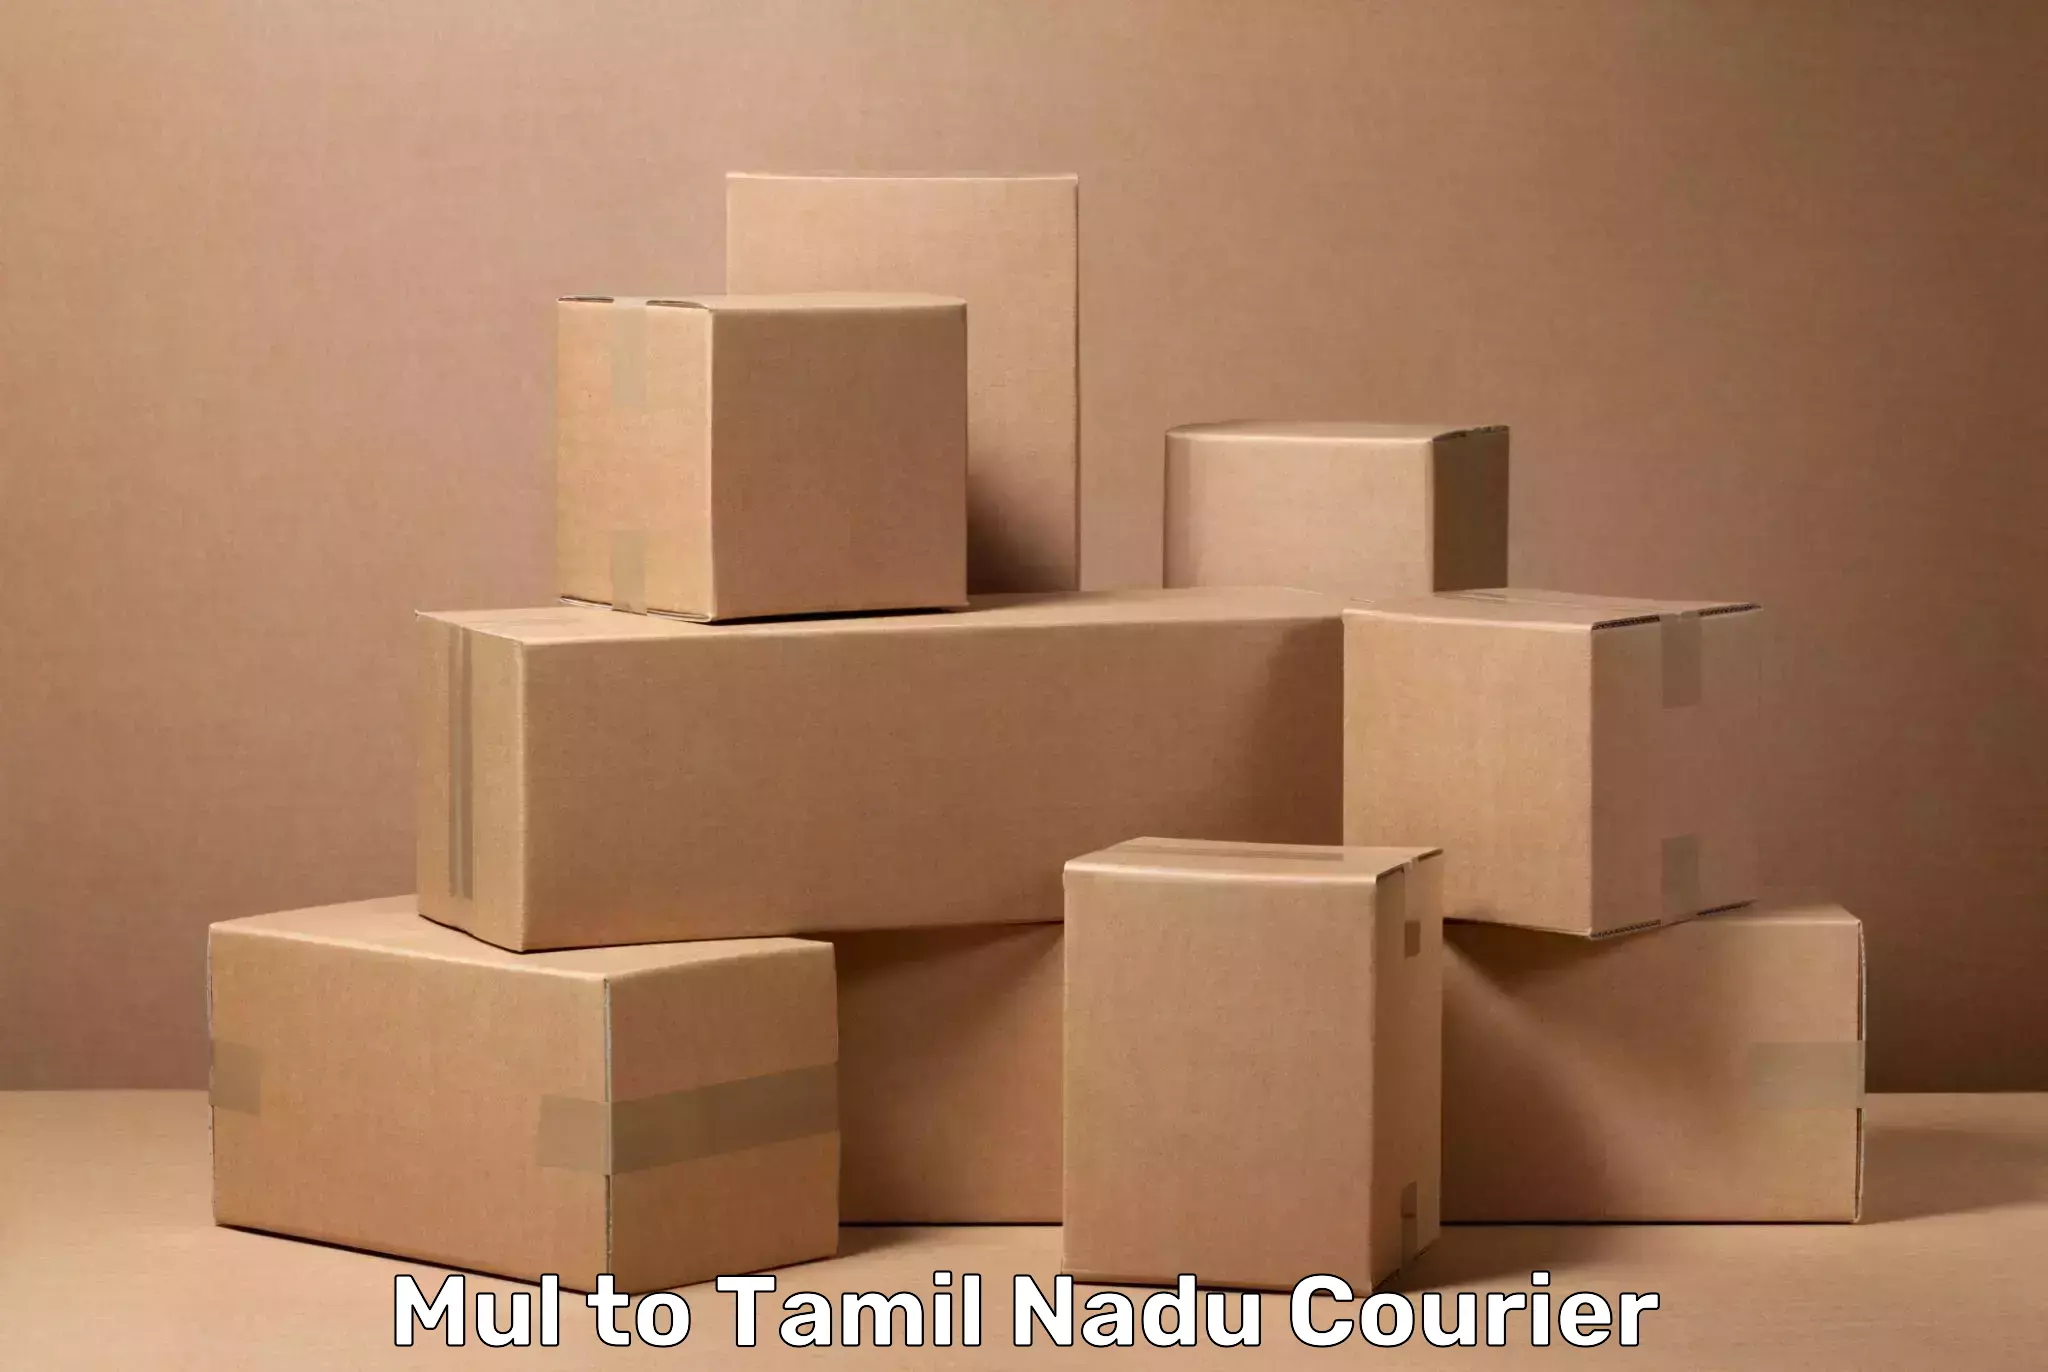 Luggage transport logistics Mul to Tamil Nadu